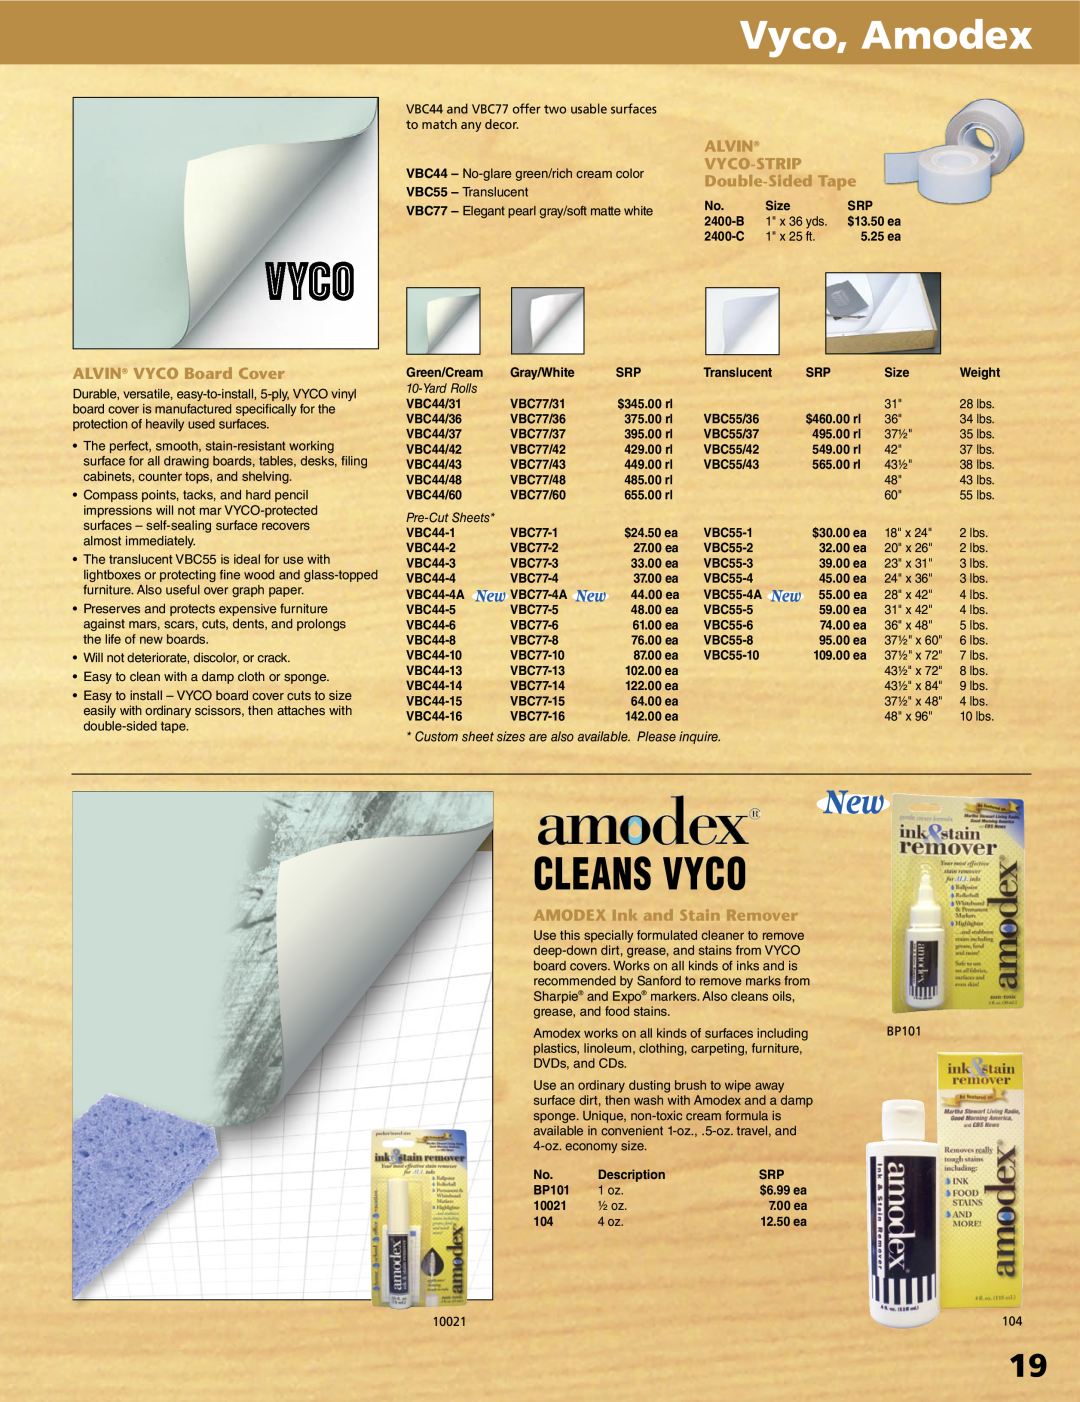 Alvin XV-3-XB, XX-4-XB, XV-4-XB manual Vyco, Amodex, Cleans Vyco, ALVIN VYCO-STRIP Double-SidedTape, ALVIN VYCO Board Cover 